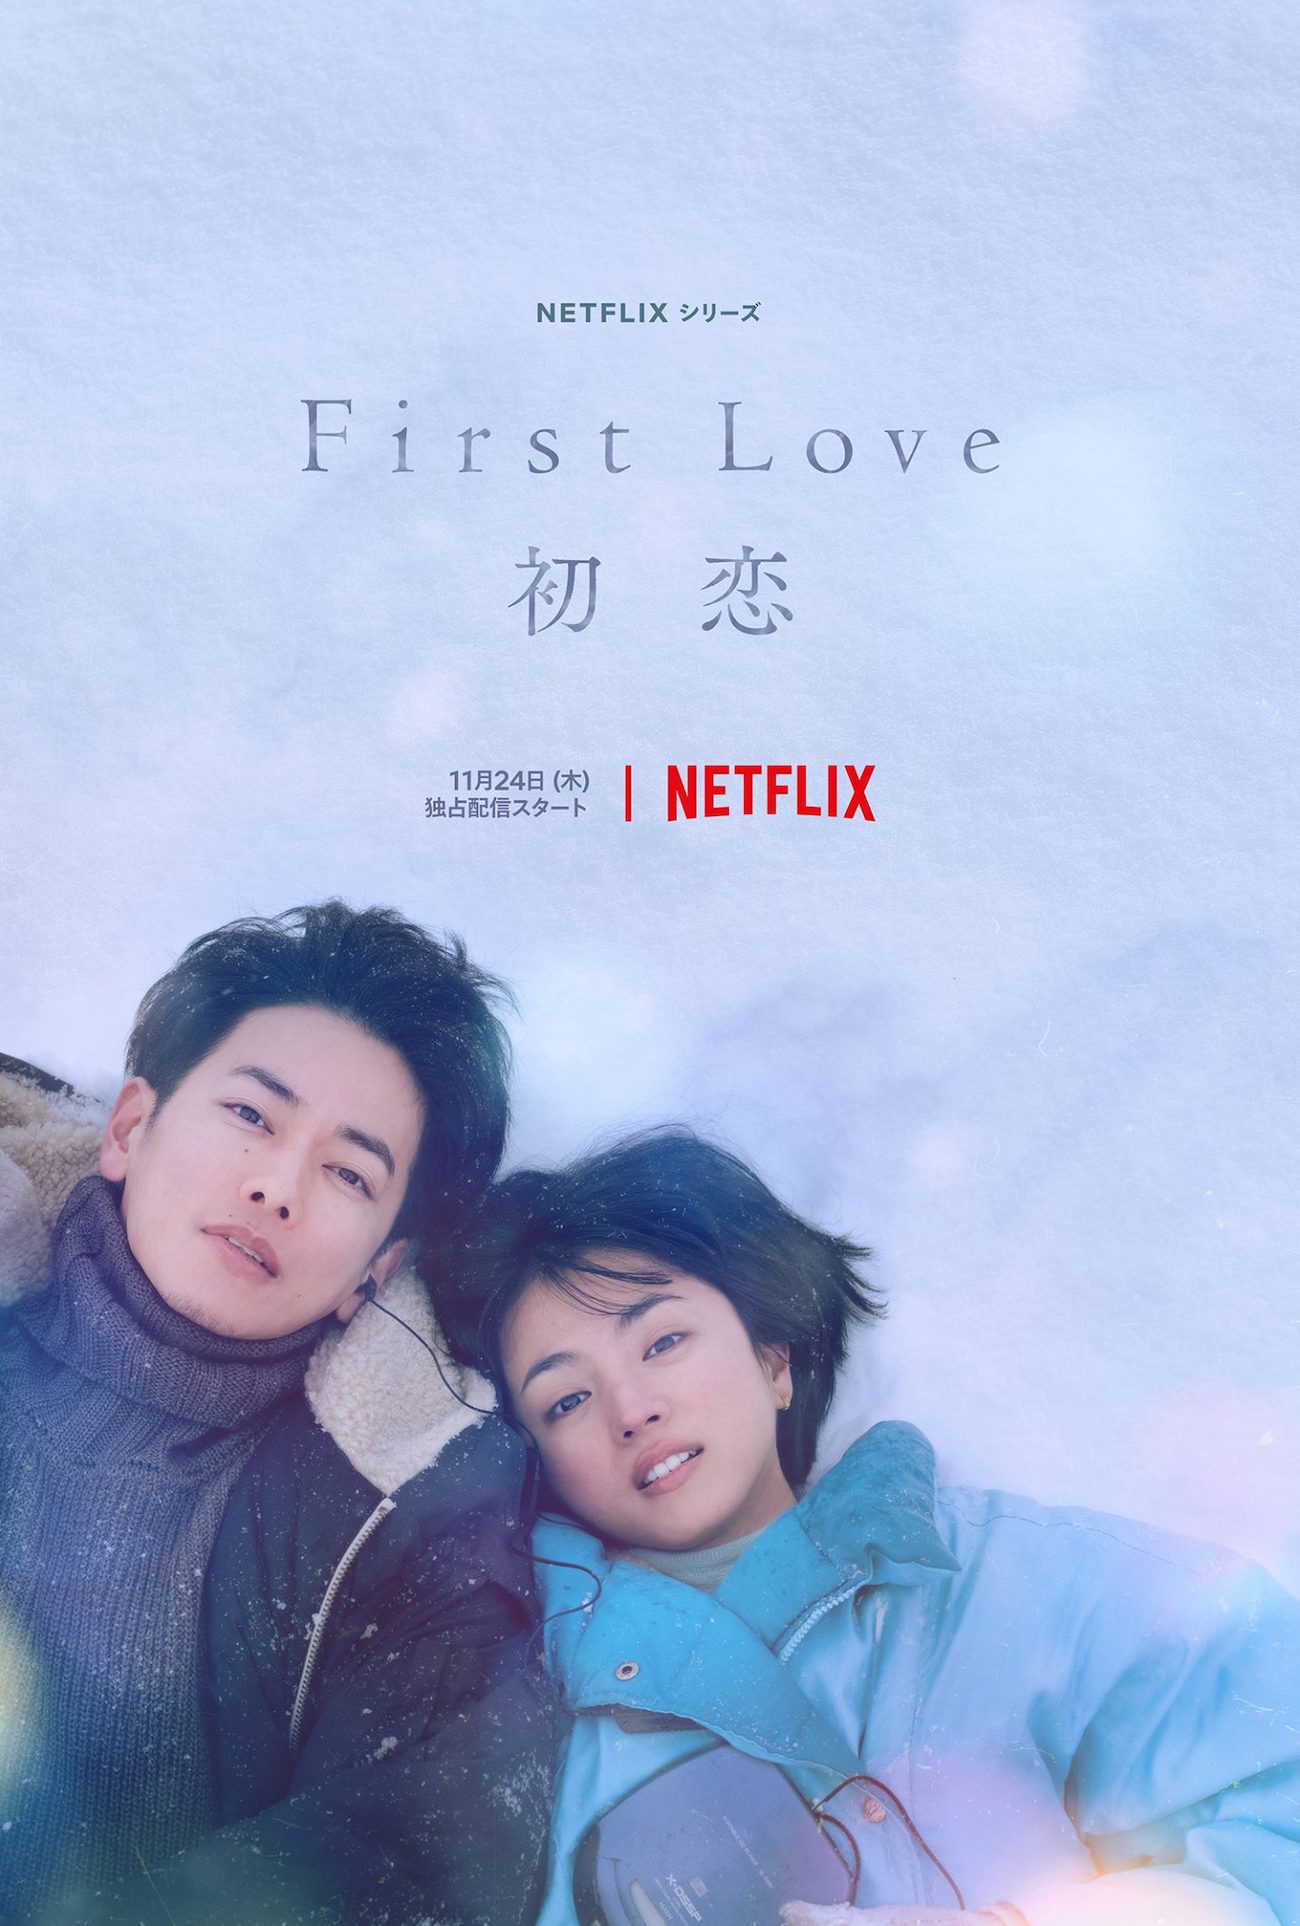 First Love Netflix-p2.jpg